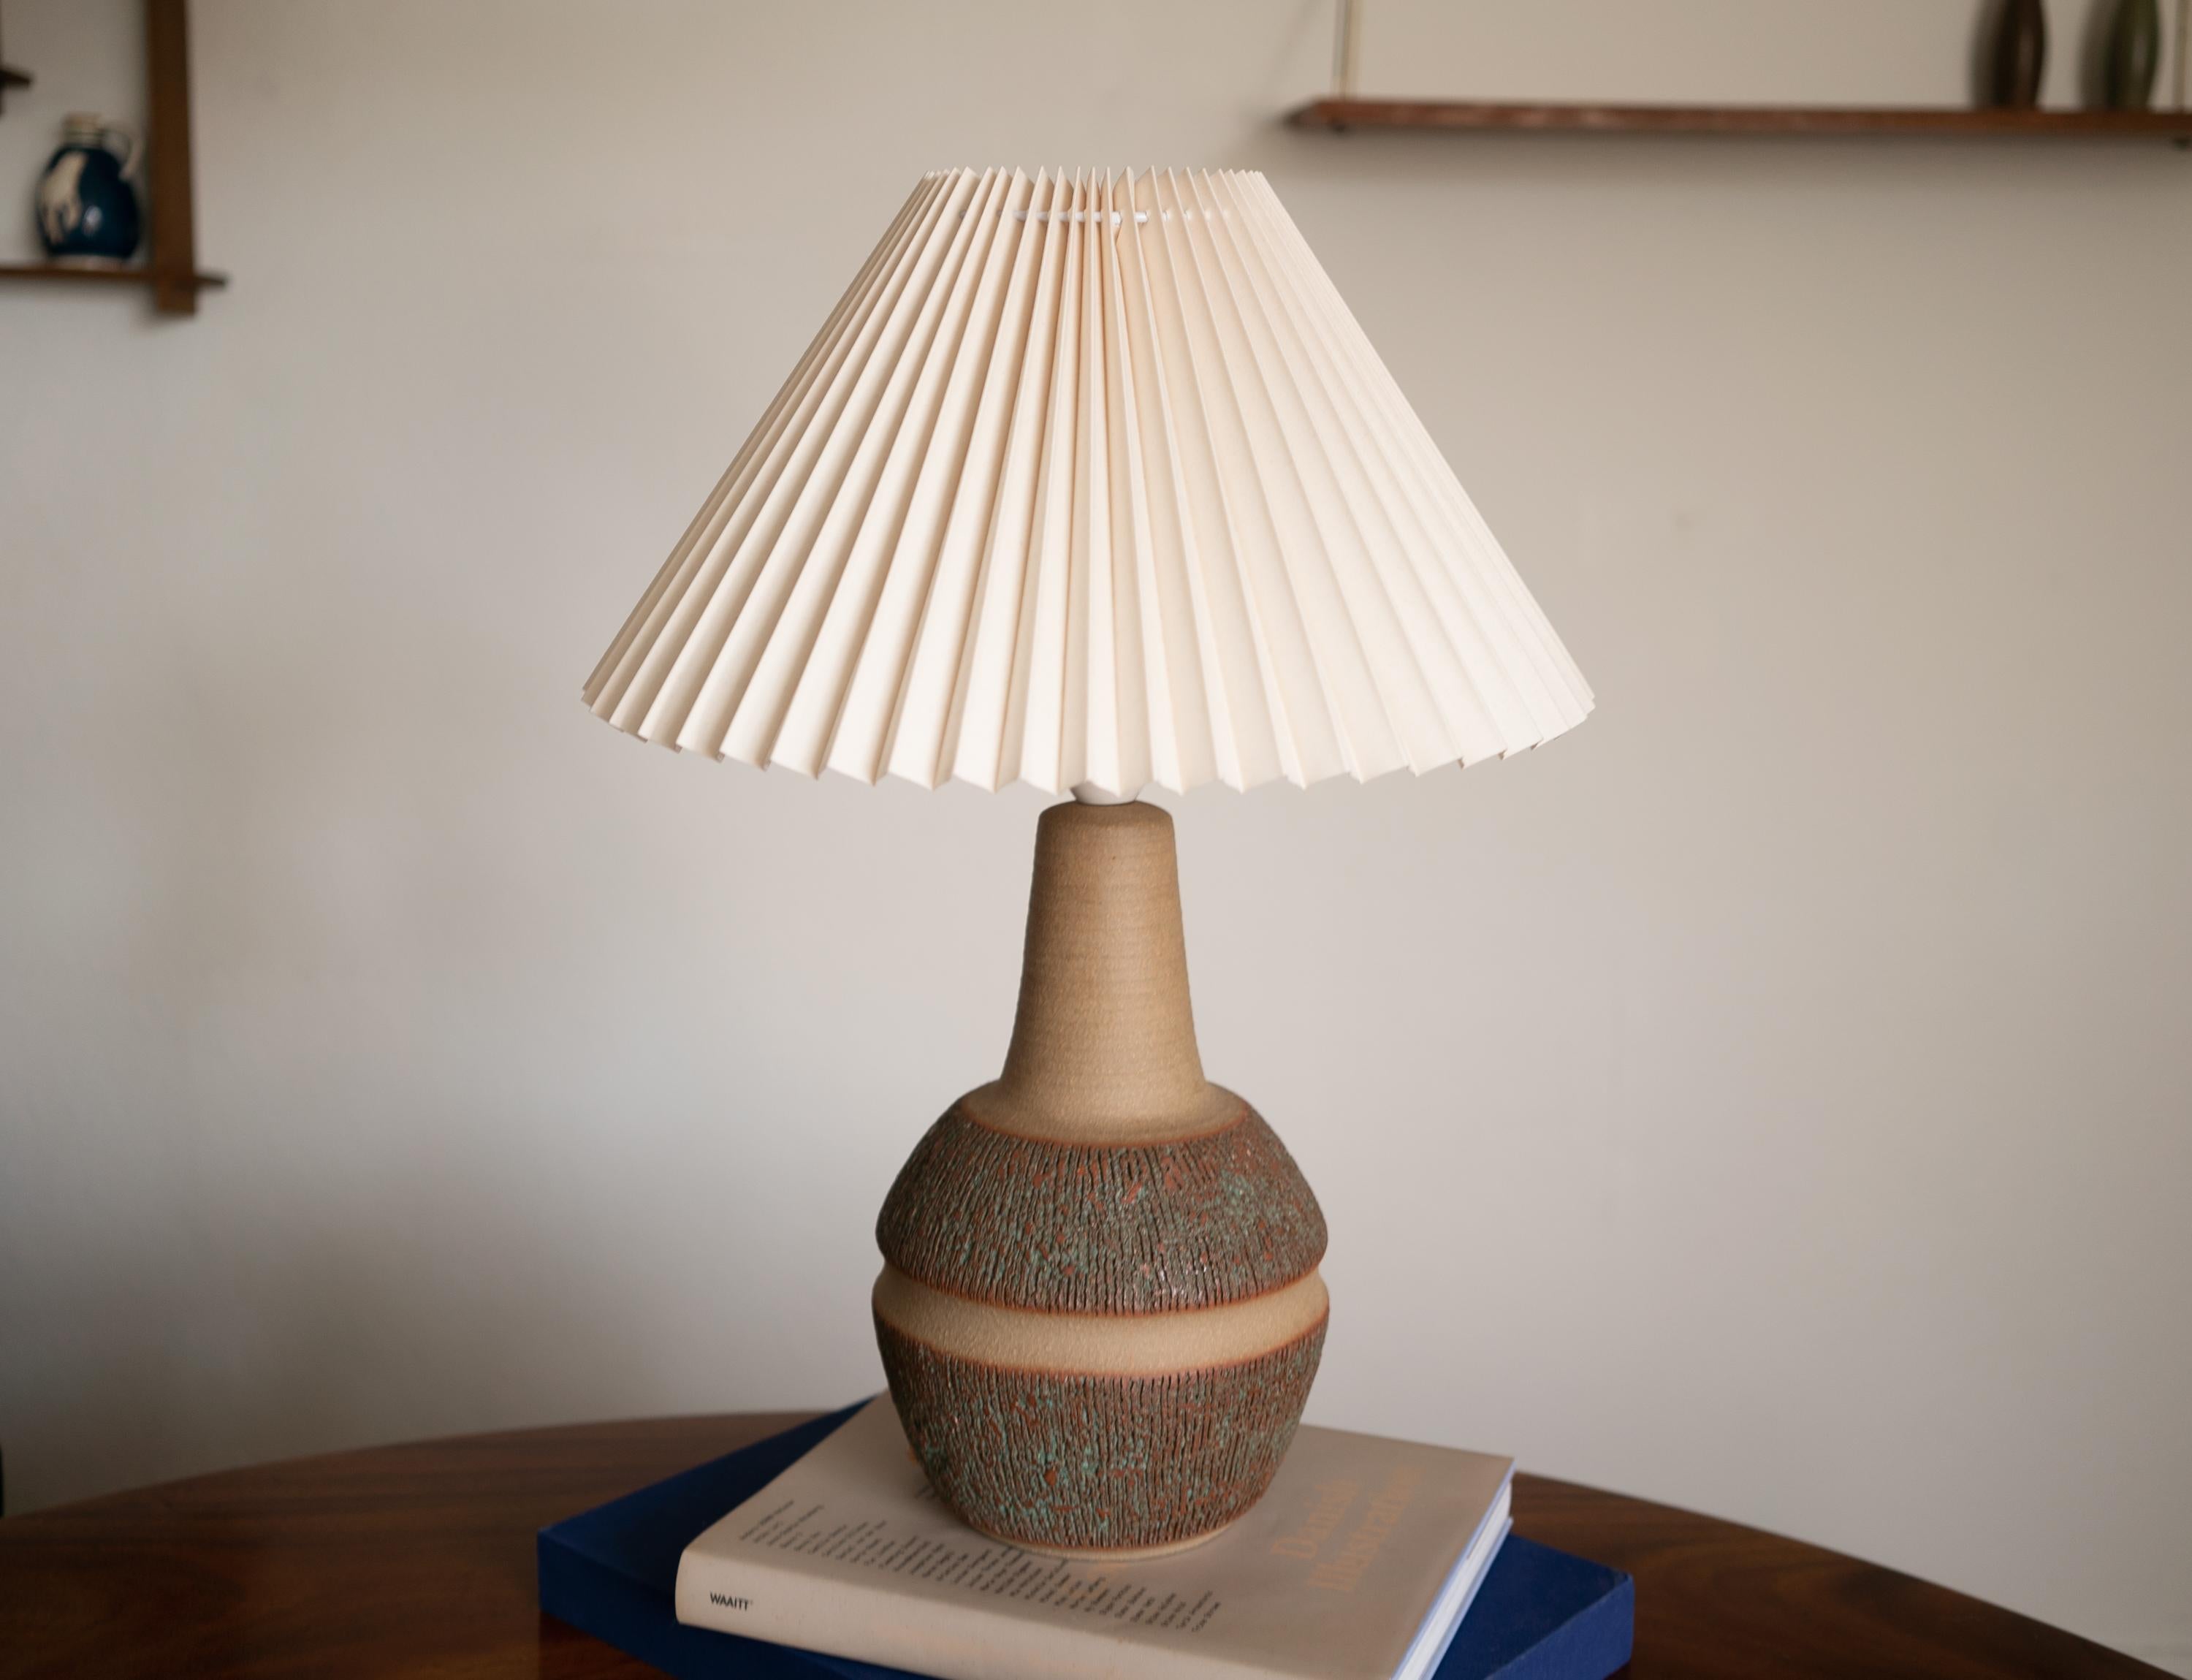 Petite lampe de table par Einar Johansen pour Søholm Stentøj, Danemark, années 1960.

Estampillé et signé sur la base.

Vendu sans abat-jour. La hauteur inclut la douille. Entièrement fonctionnel et en très bon état.